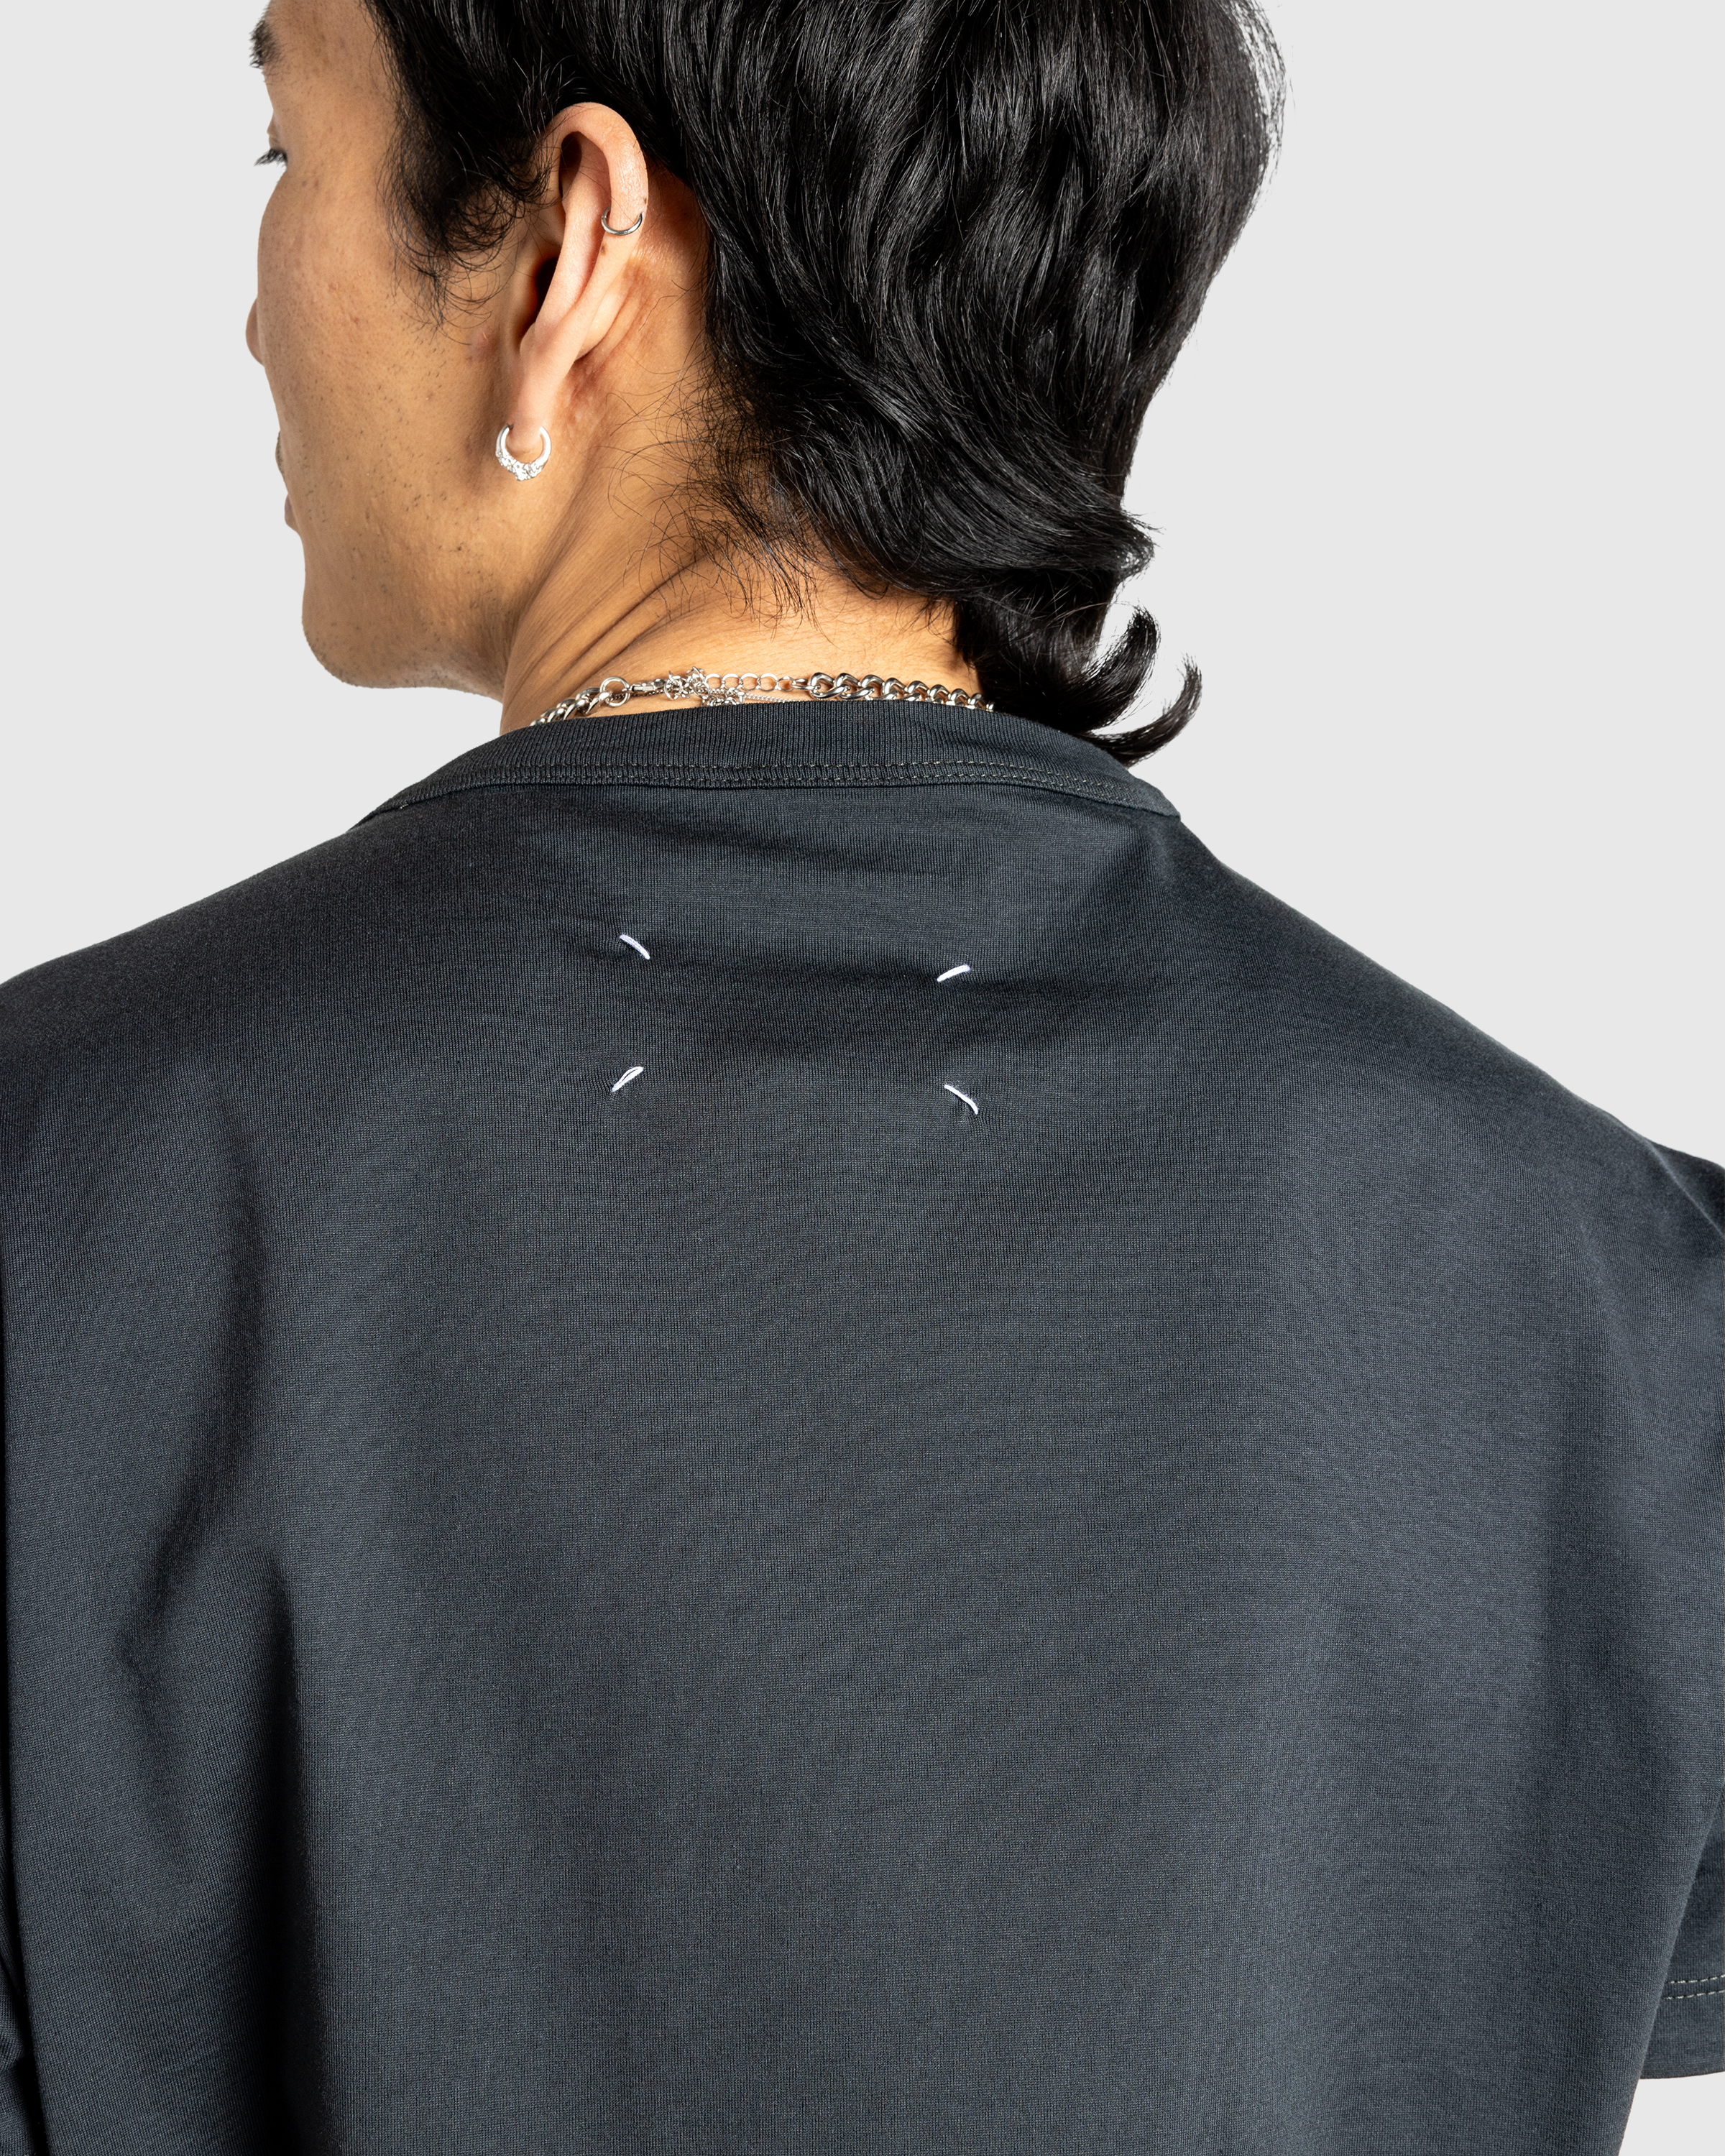 Maison Margiela – Distorted Logo T-Shirt Washed Black - Tops - Black - Image 5